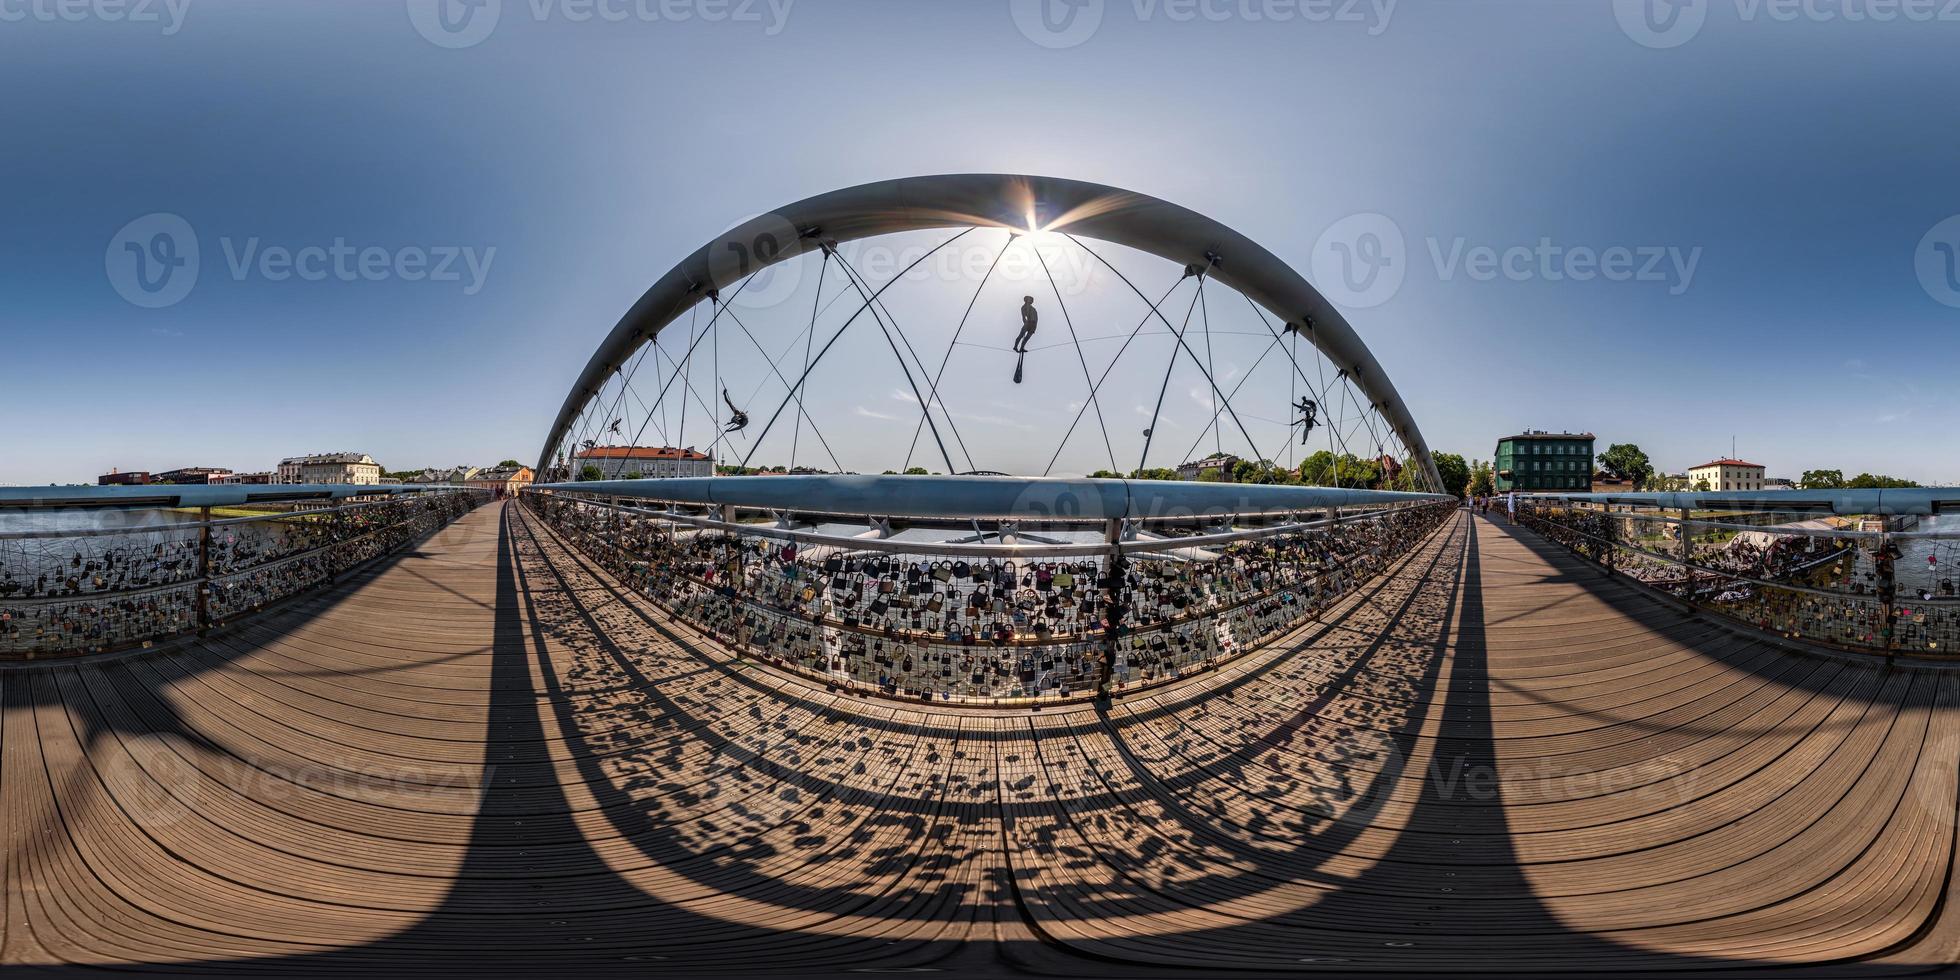 visão panorâmica hdri 360 esférica completa na ponte de madeira suspensa para pedestres com figuras monumentais de acrobatas acima do rio largo em projeção equiretangular. para conteúdo vr ar foto